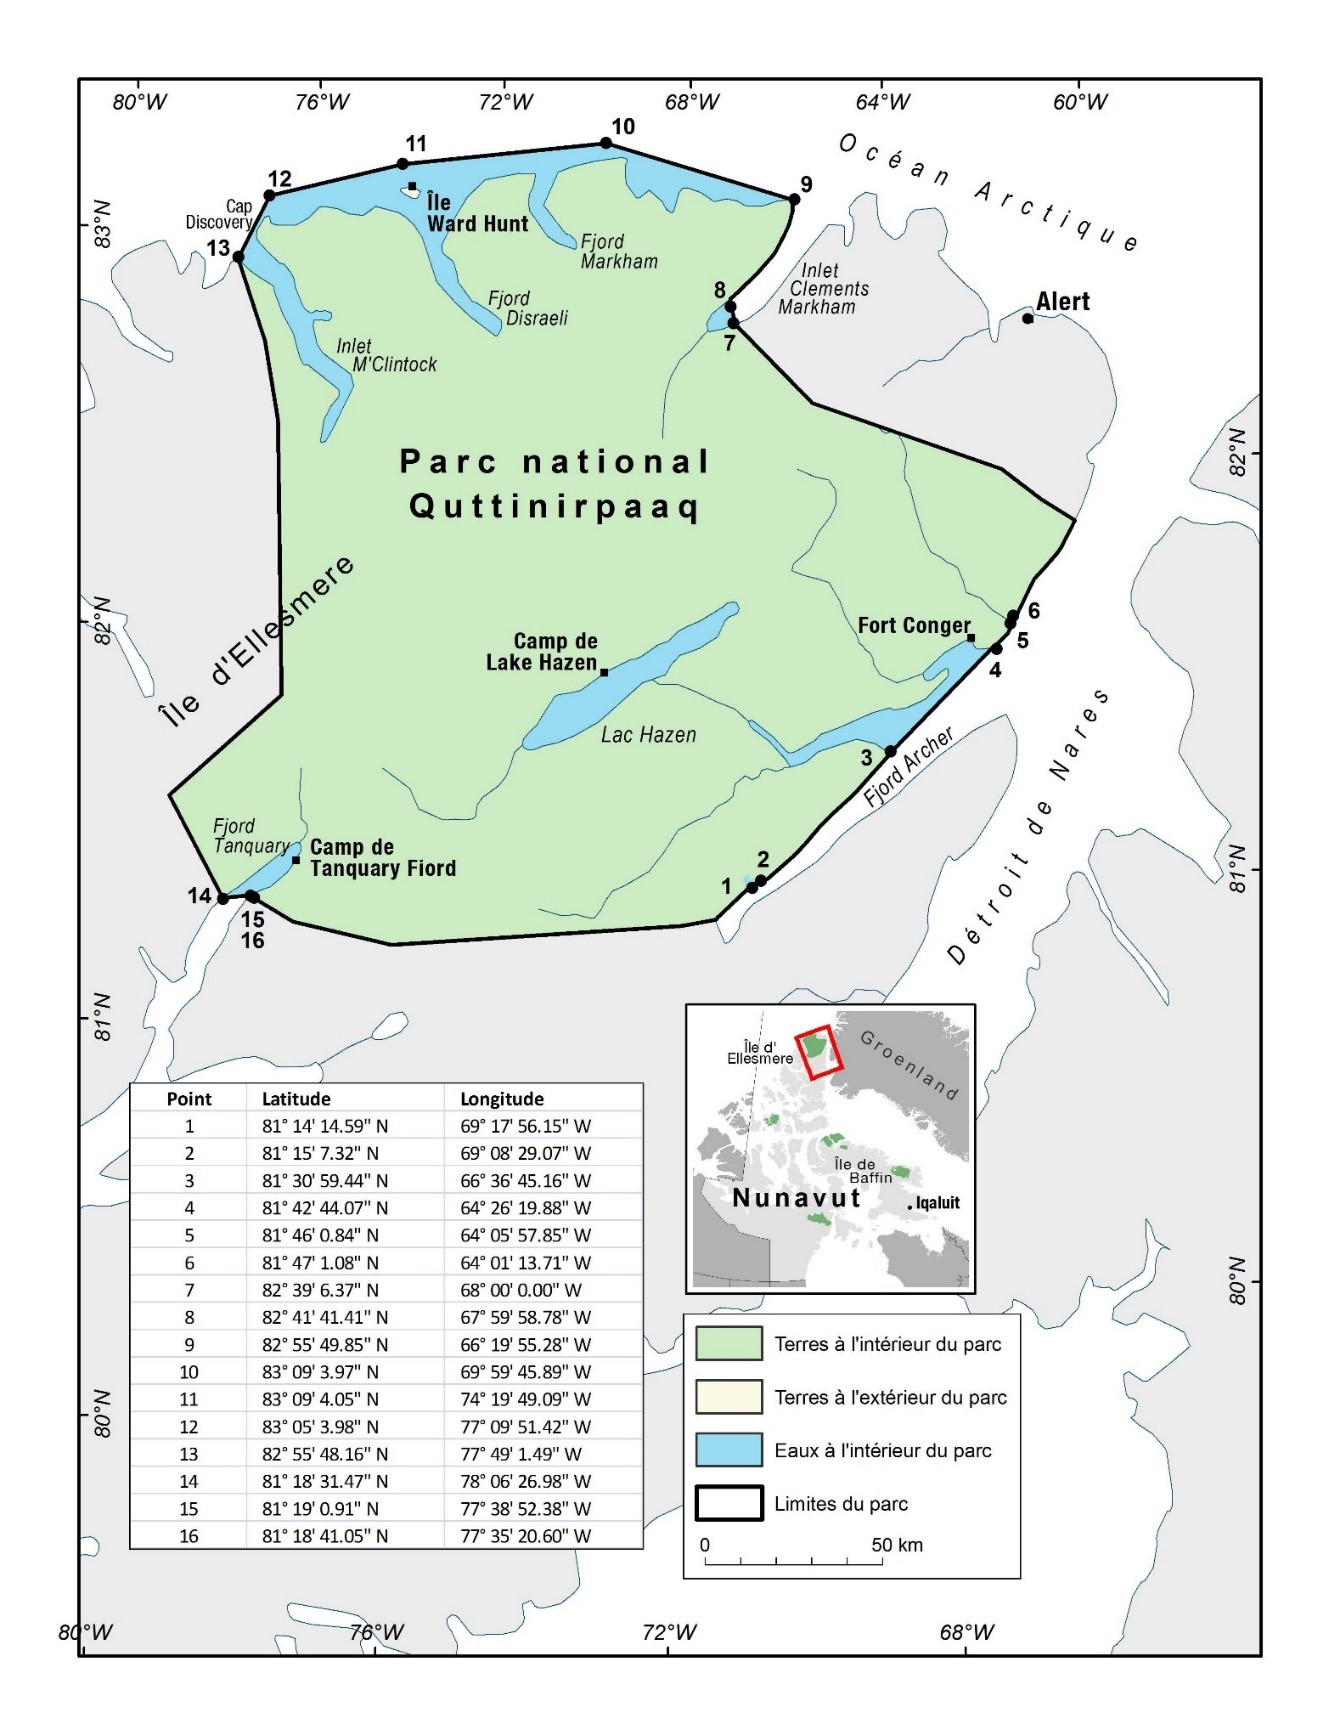 Carte du parc national du Canada Quttinirpaaq avec des 
                 points de coordonnées pour indiquer ses limites lorsqu'on y 
                 accède par l'eau.